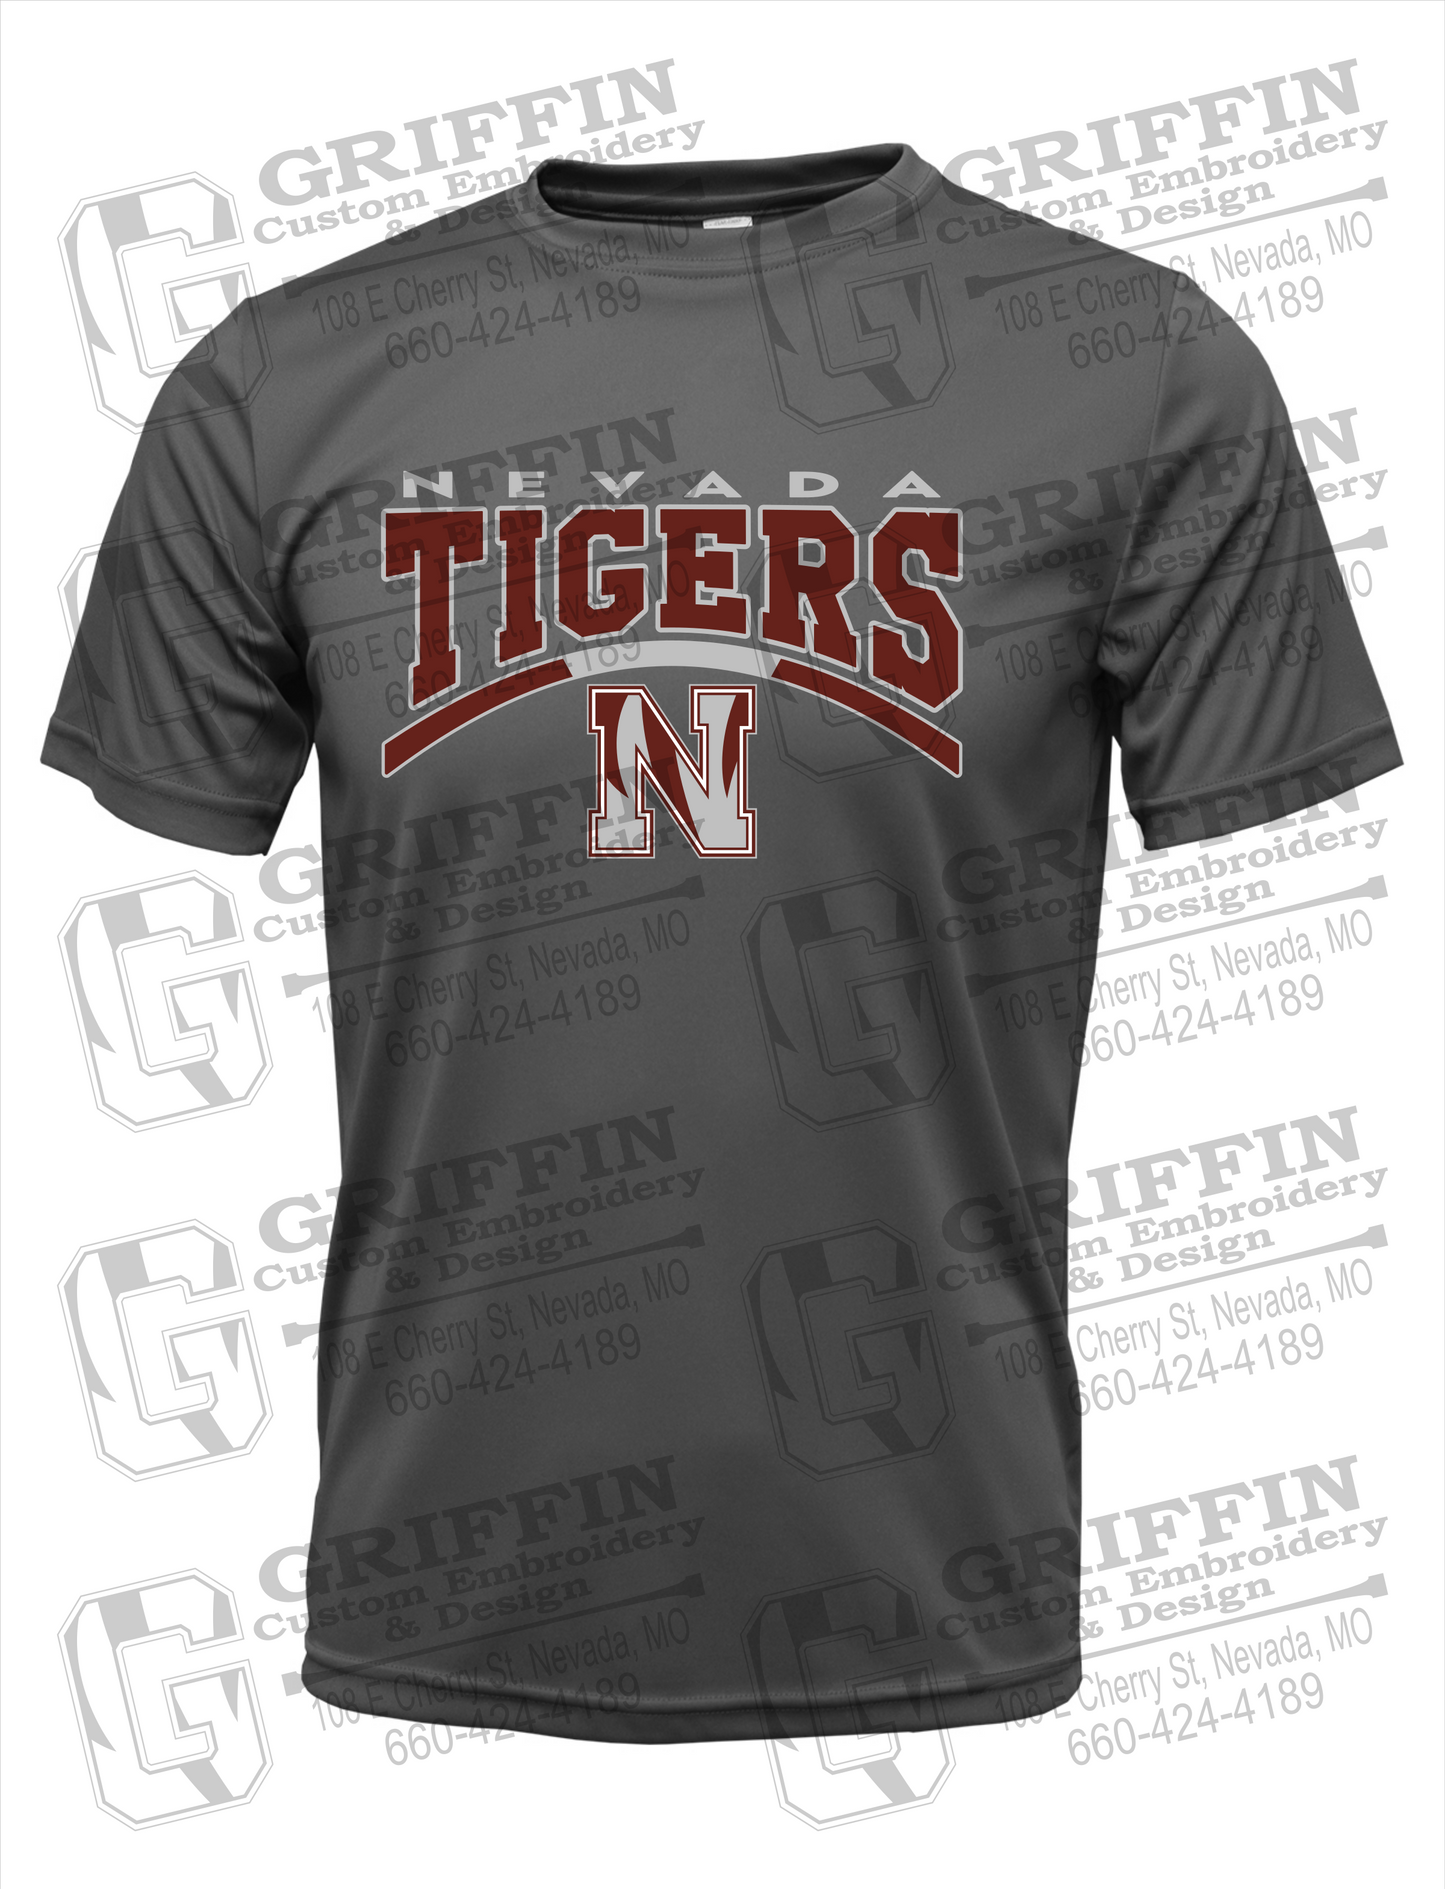 Nevada Tigers 20-Q Dry-Fit T-Shirt